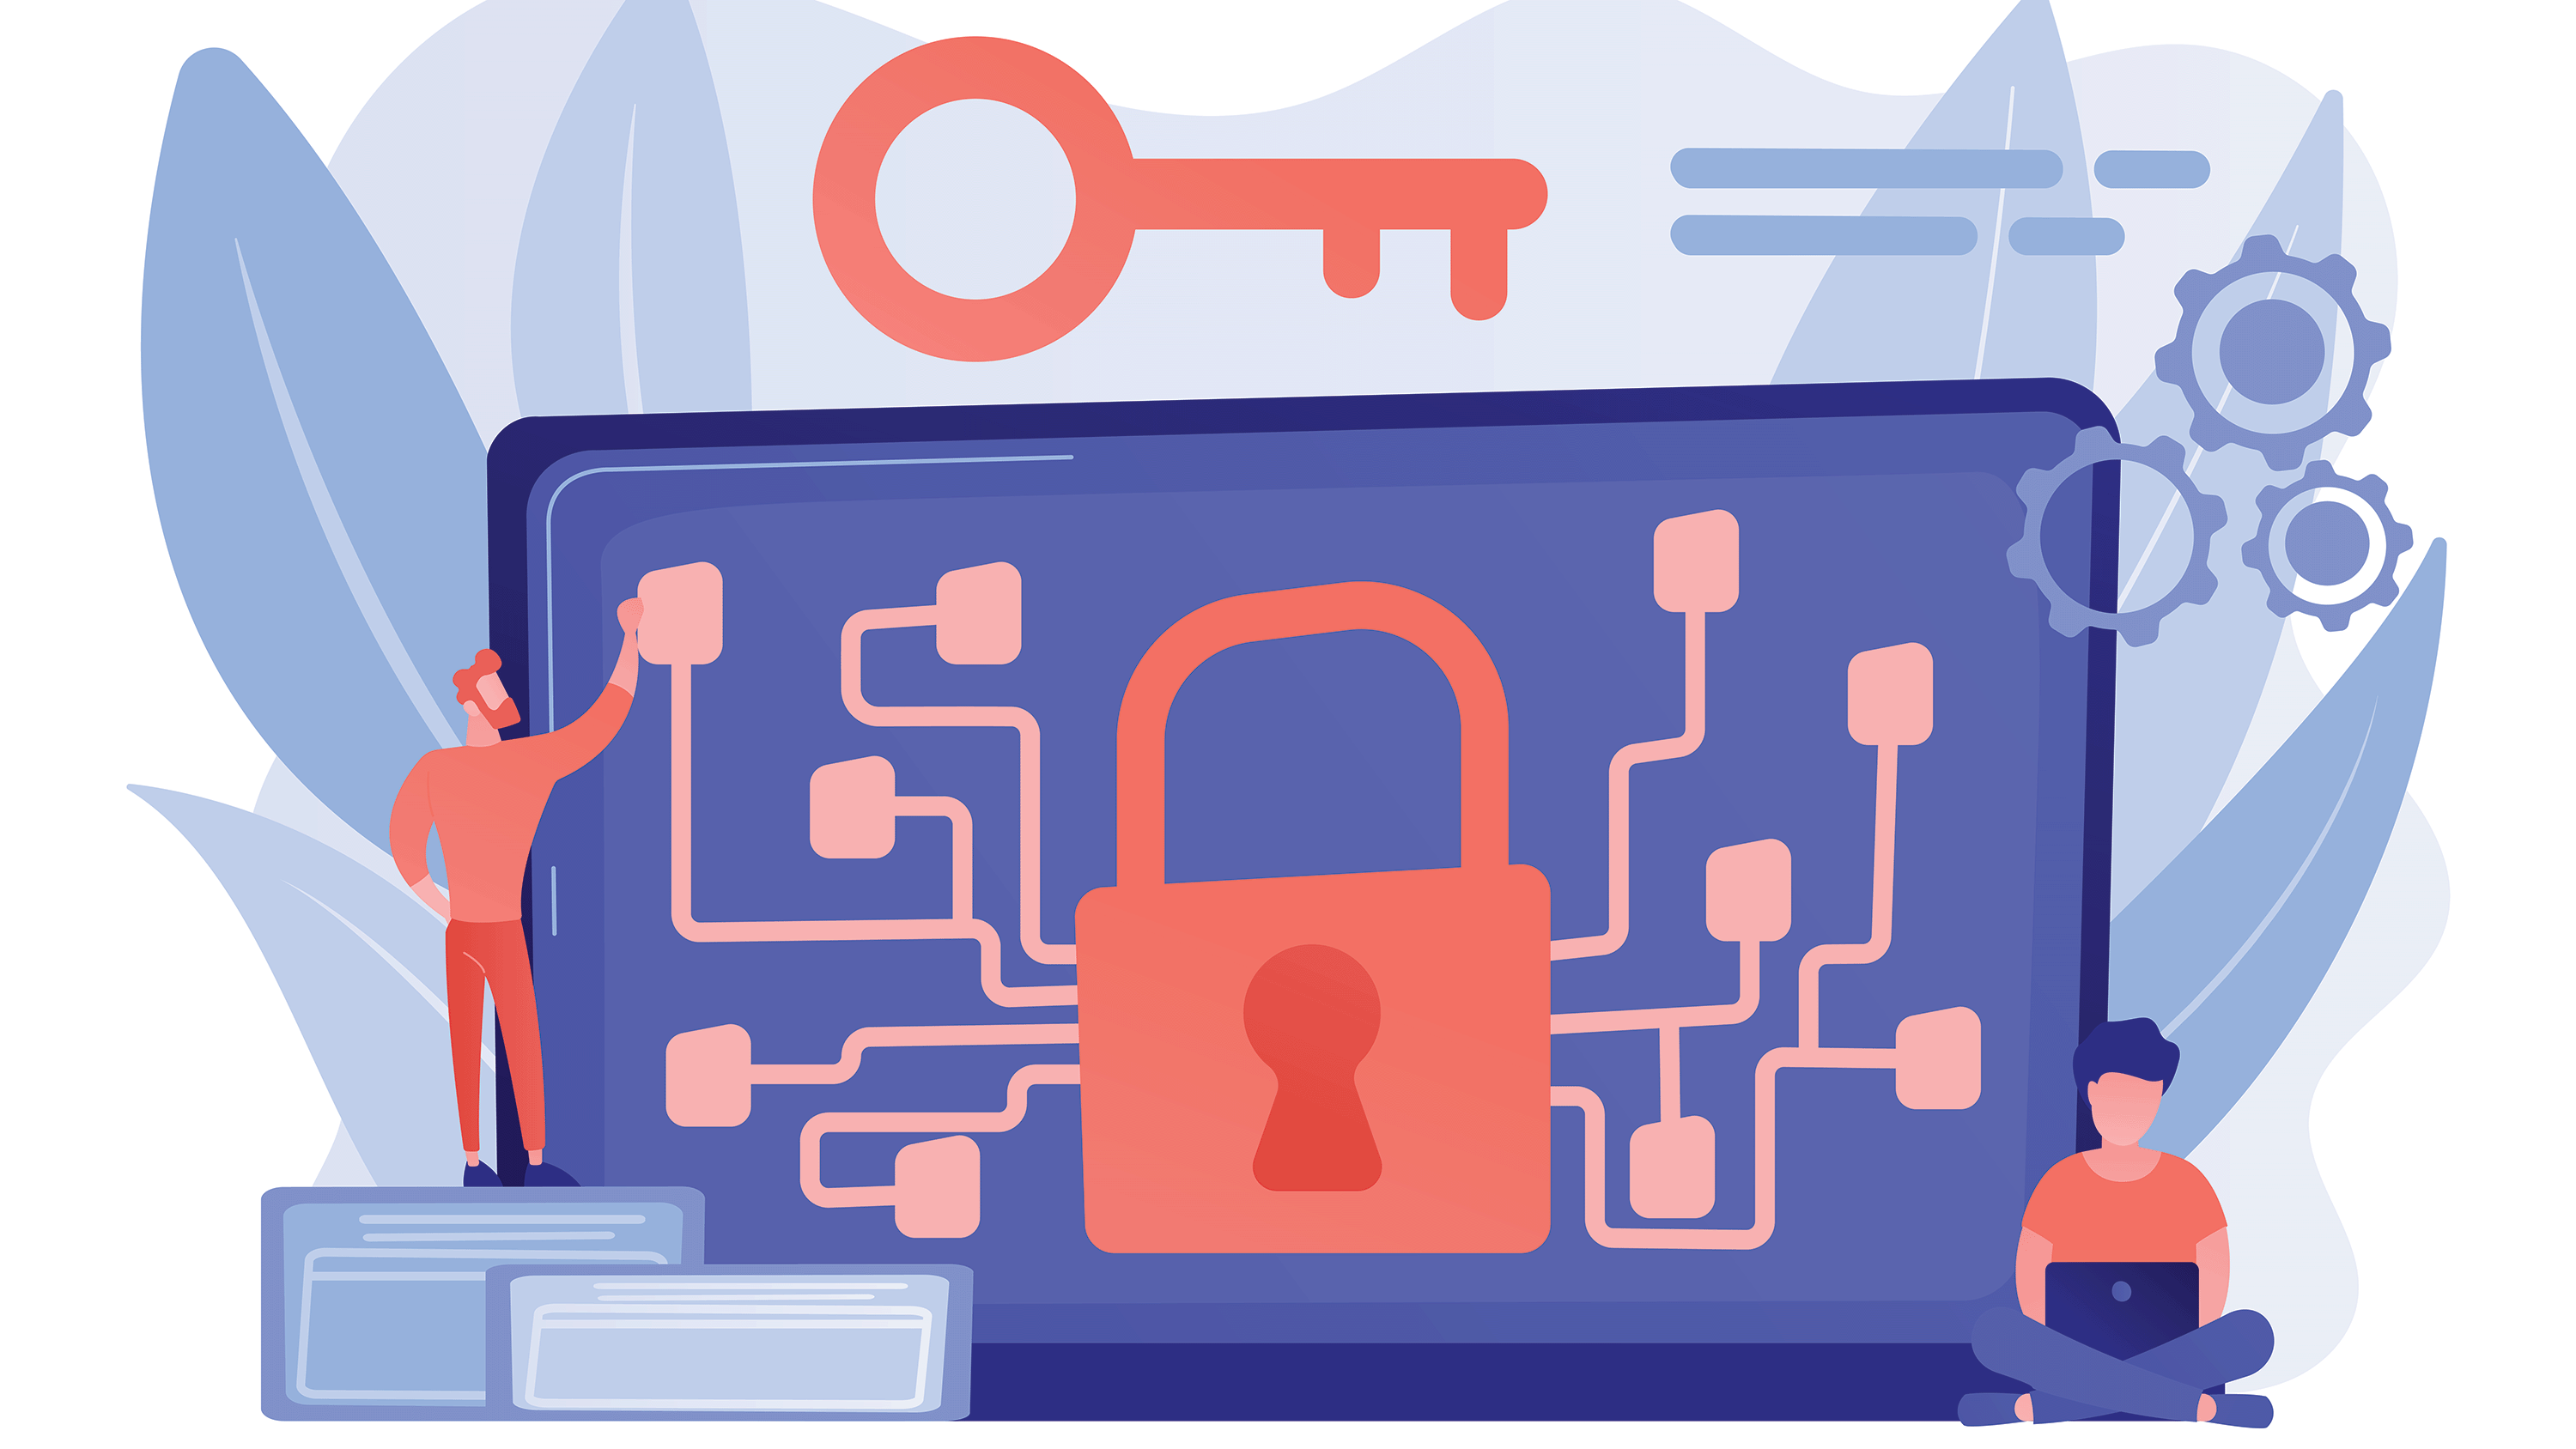 Illustration of laptop, locks, keys, and people